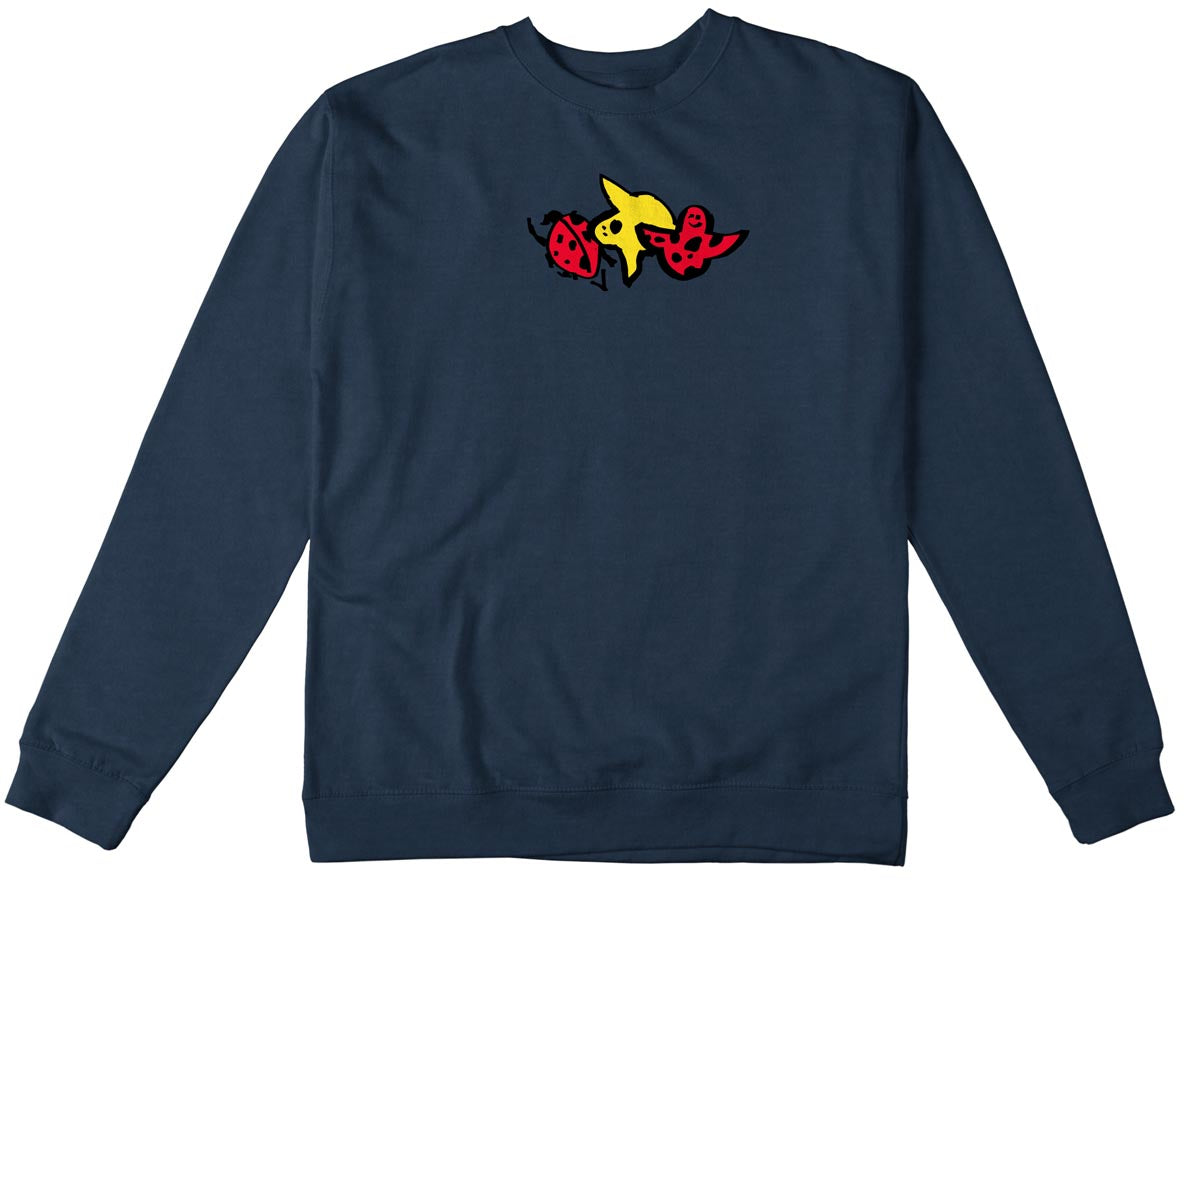 Krooked Lady Bug Sweatshirt - Classic Navy Heather image 1